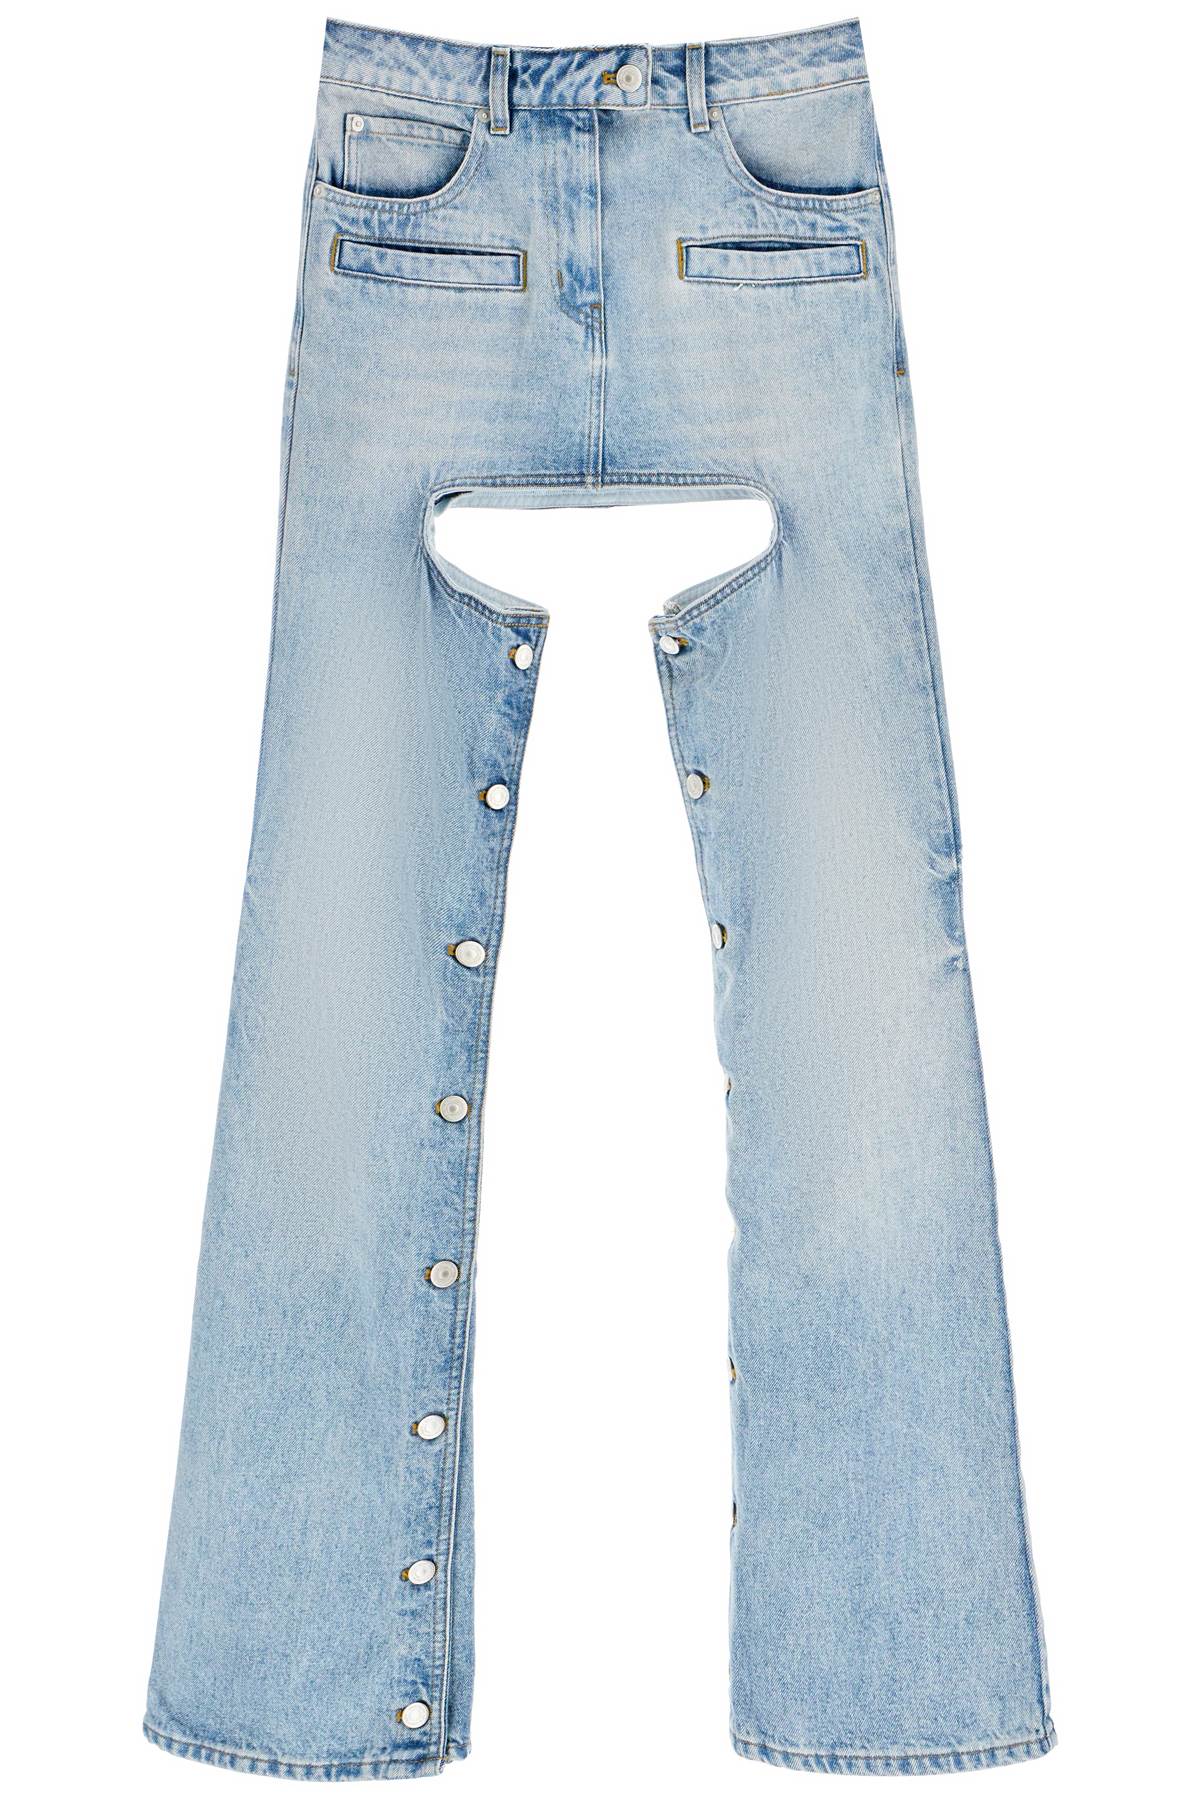 COURREGÈS Blue 'Chaps' Cut-Out Jeans for Women - SS23 Collection